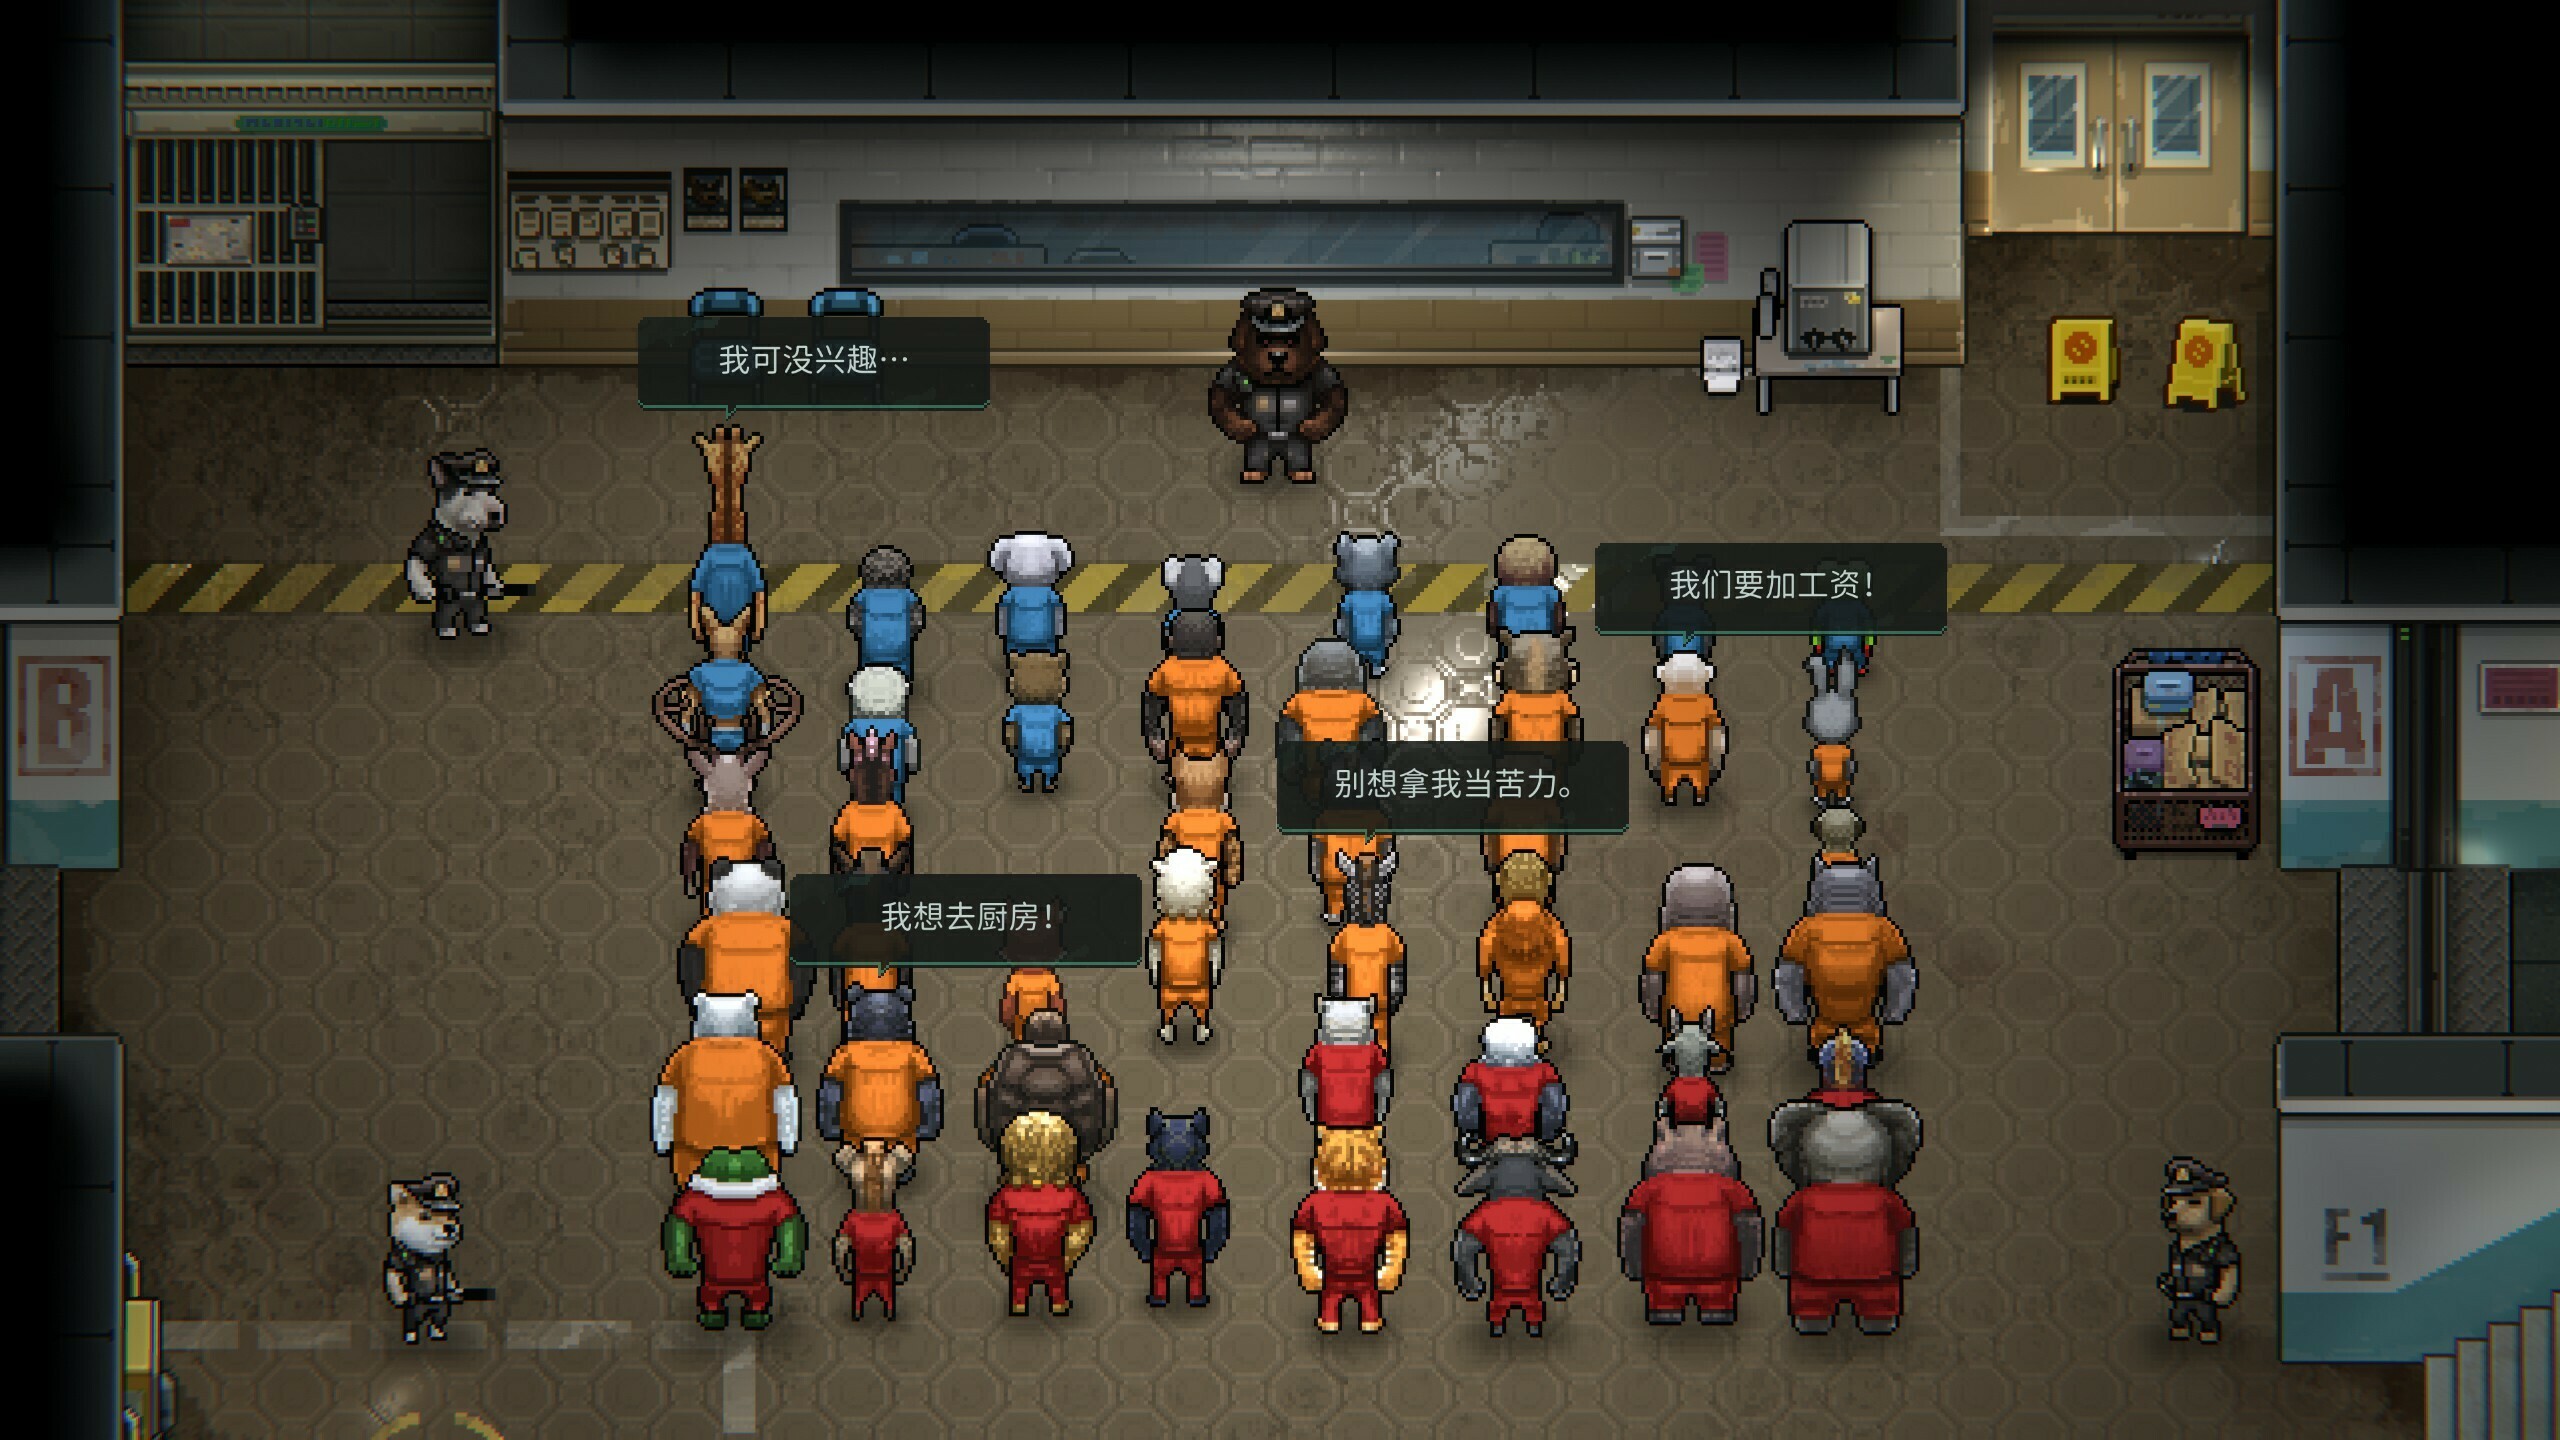 监狱中的所有囚犯都有着独特的剧情故事等待玩家探索